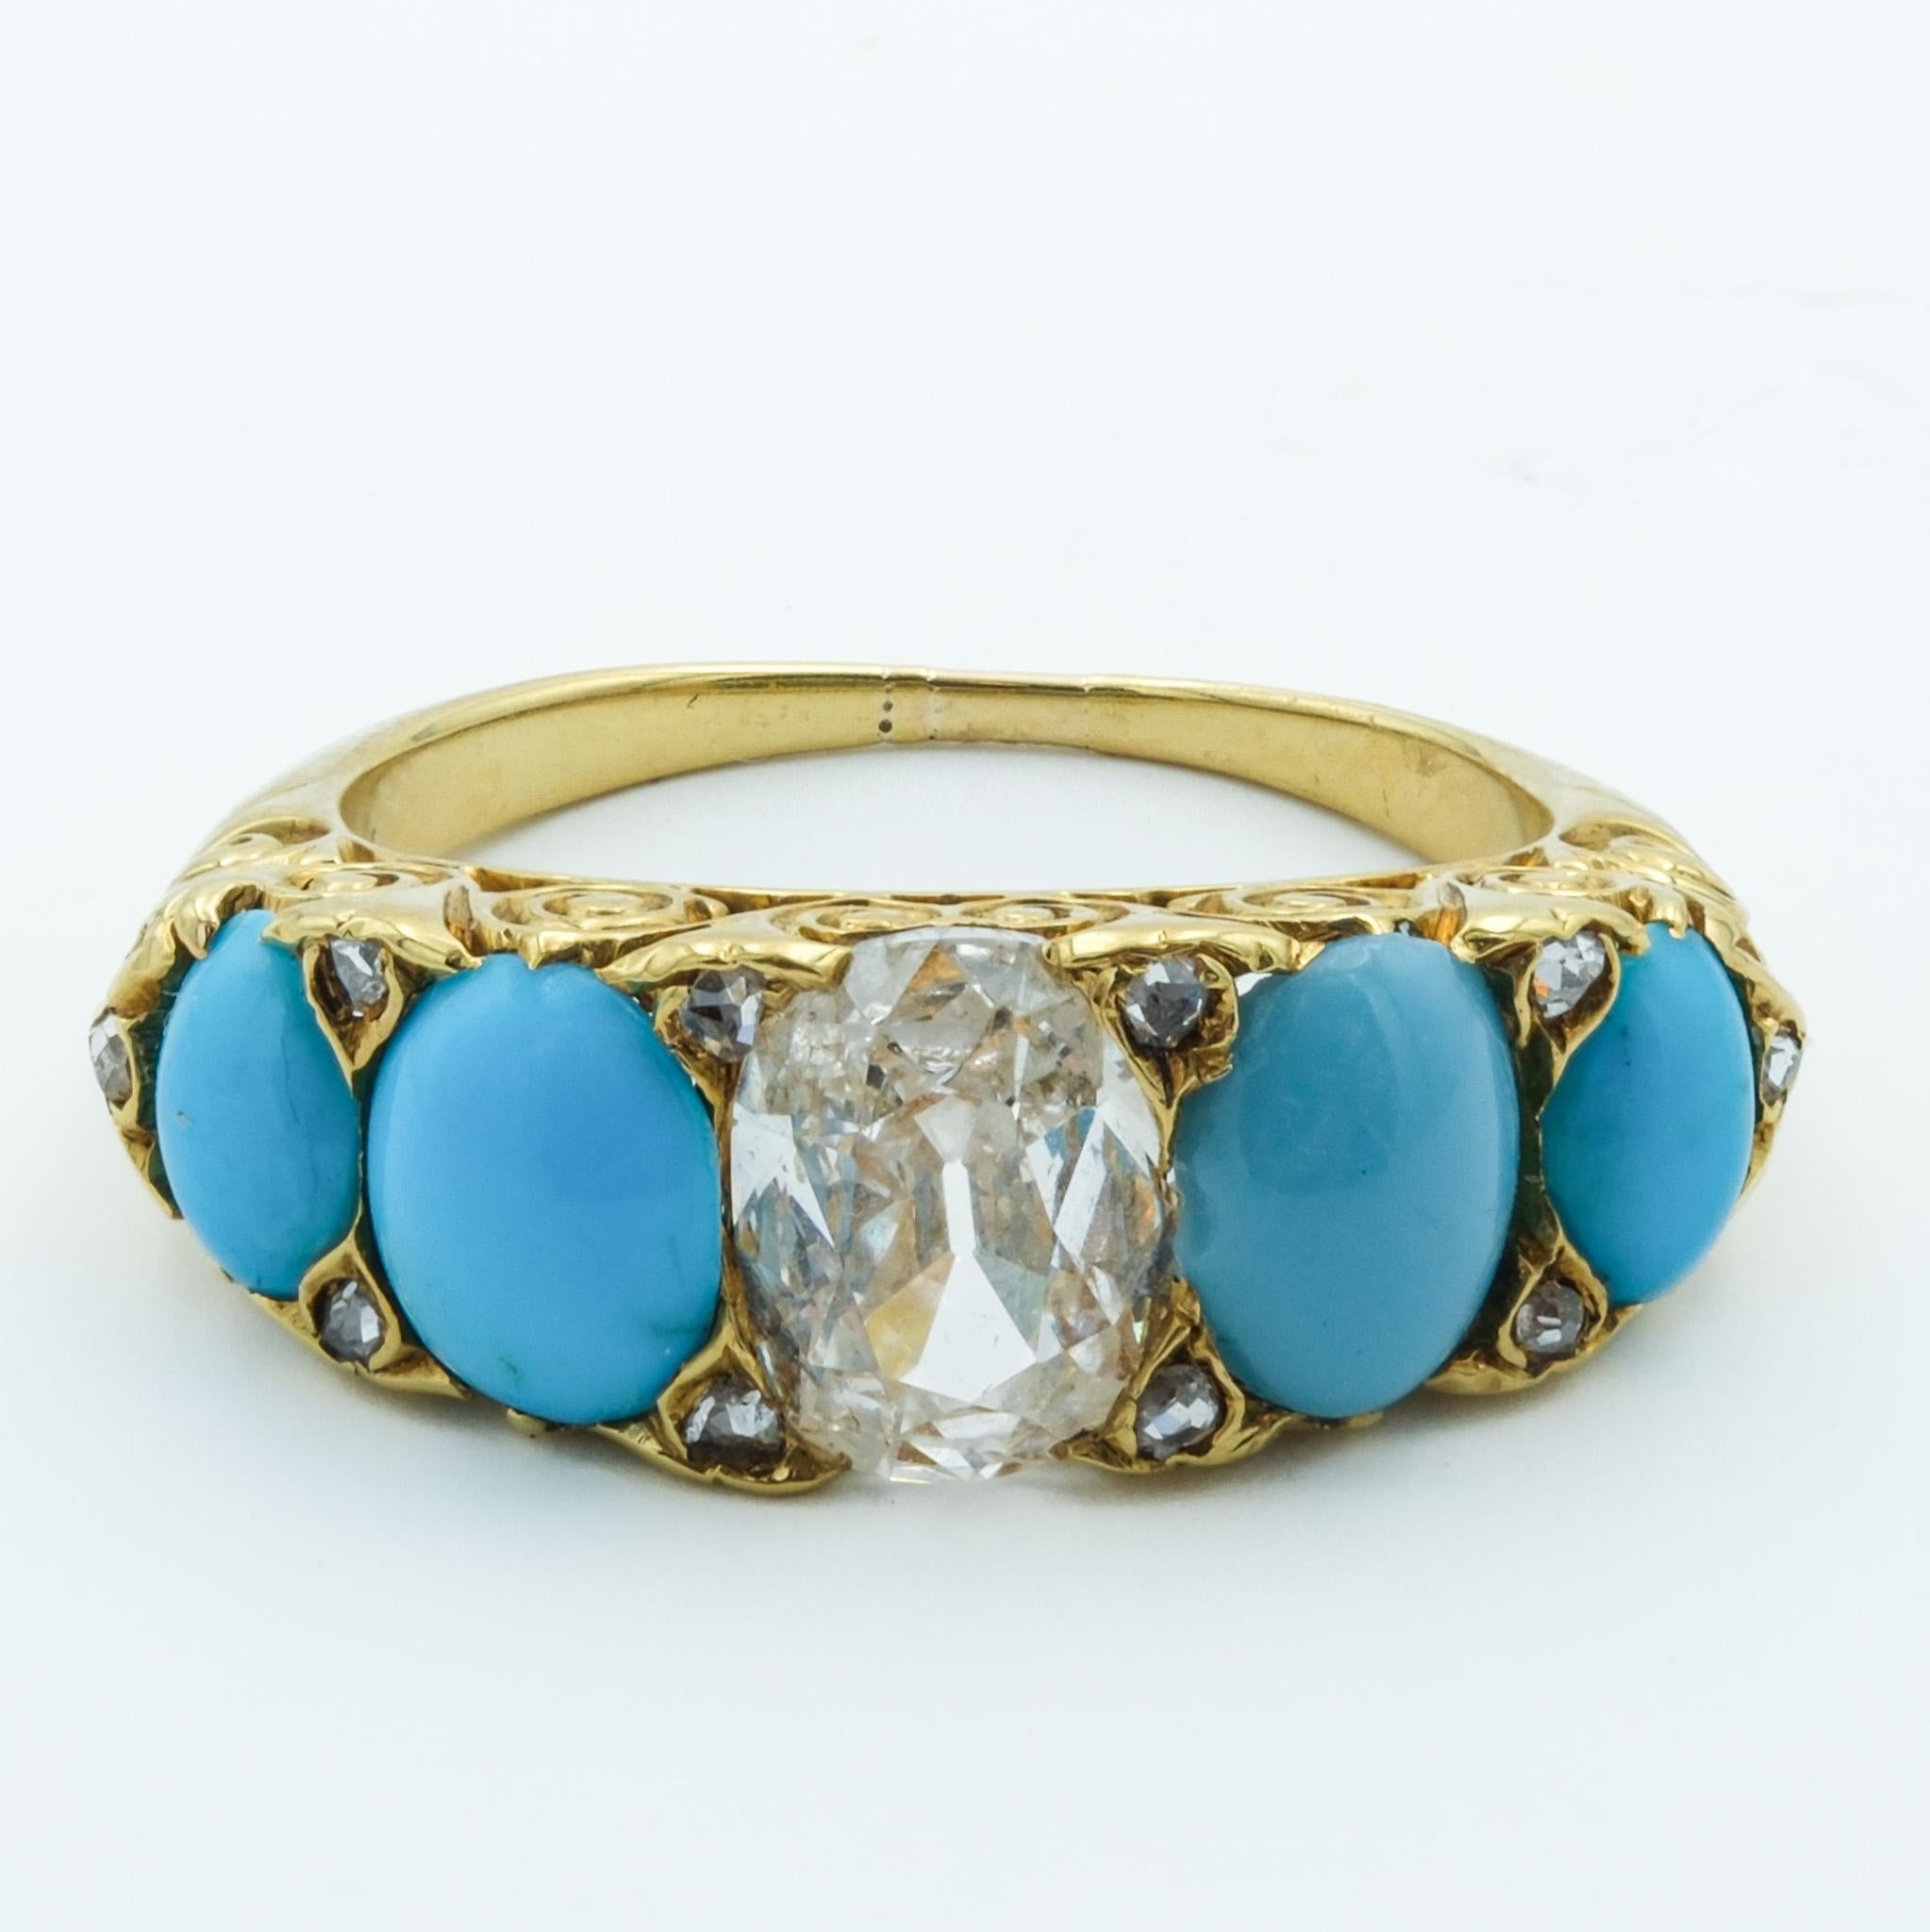 Dieser viktorianische Ring ist ein bemerkenswertes Schmuckstück, das die Grandeur der viktorianischen Ära widerspiegelt. Er ist meisterhaft aus 18 Karat Gelbgold gefertigt, das eine warme, reiche Grundlage für das Design bietet. Der Ring zeichnet